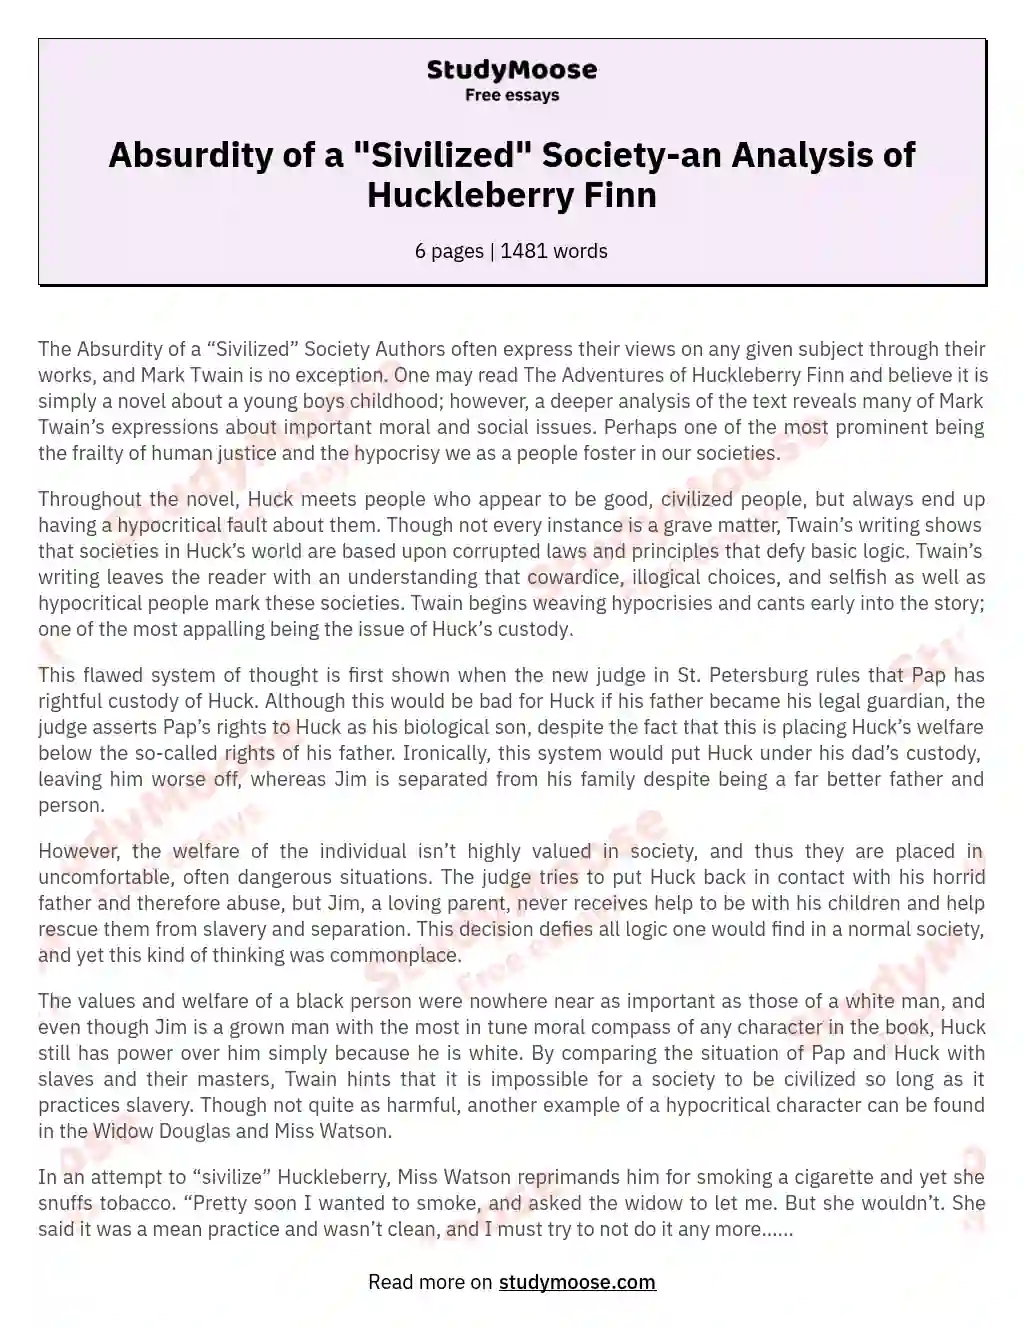 Absurdity of a "Sivilized" Society-an Analysis of Huckleberry Finn